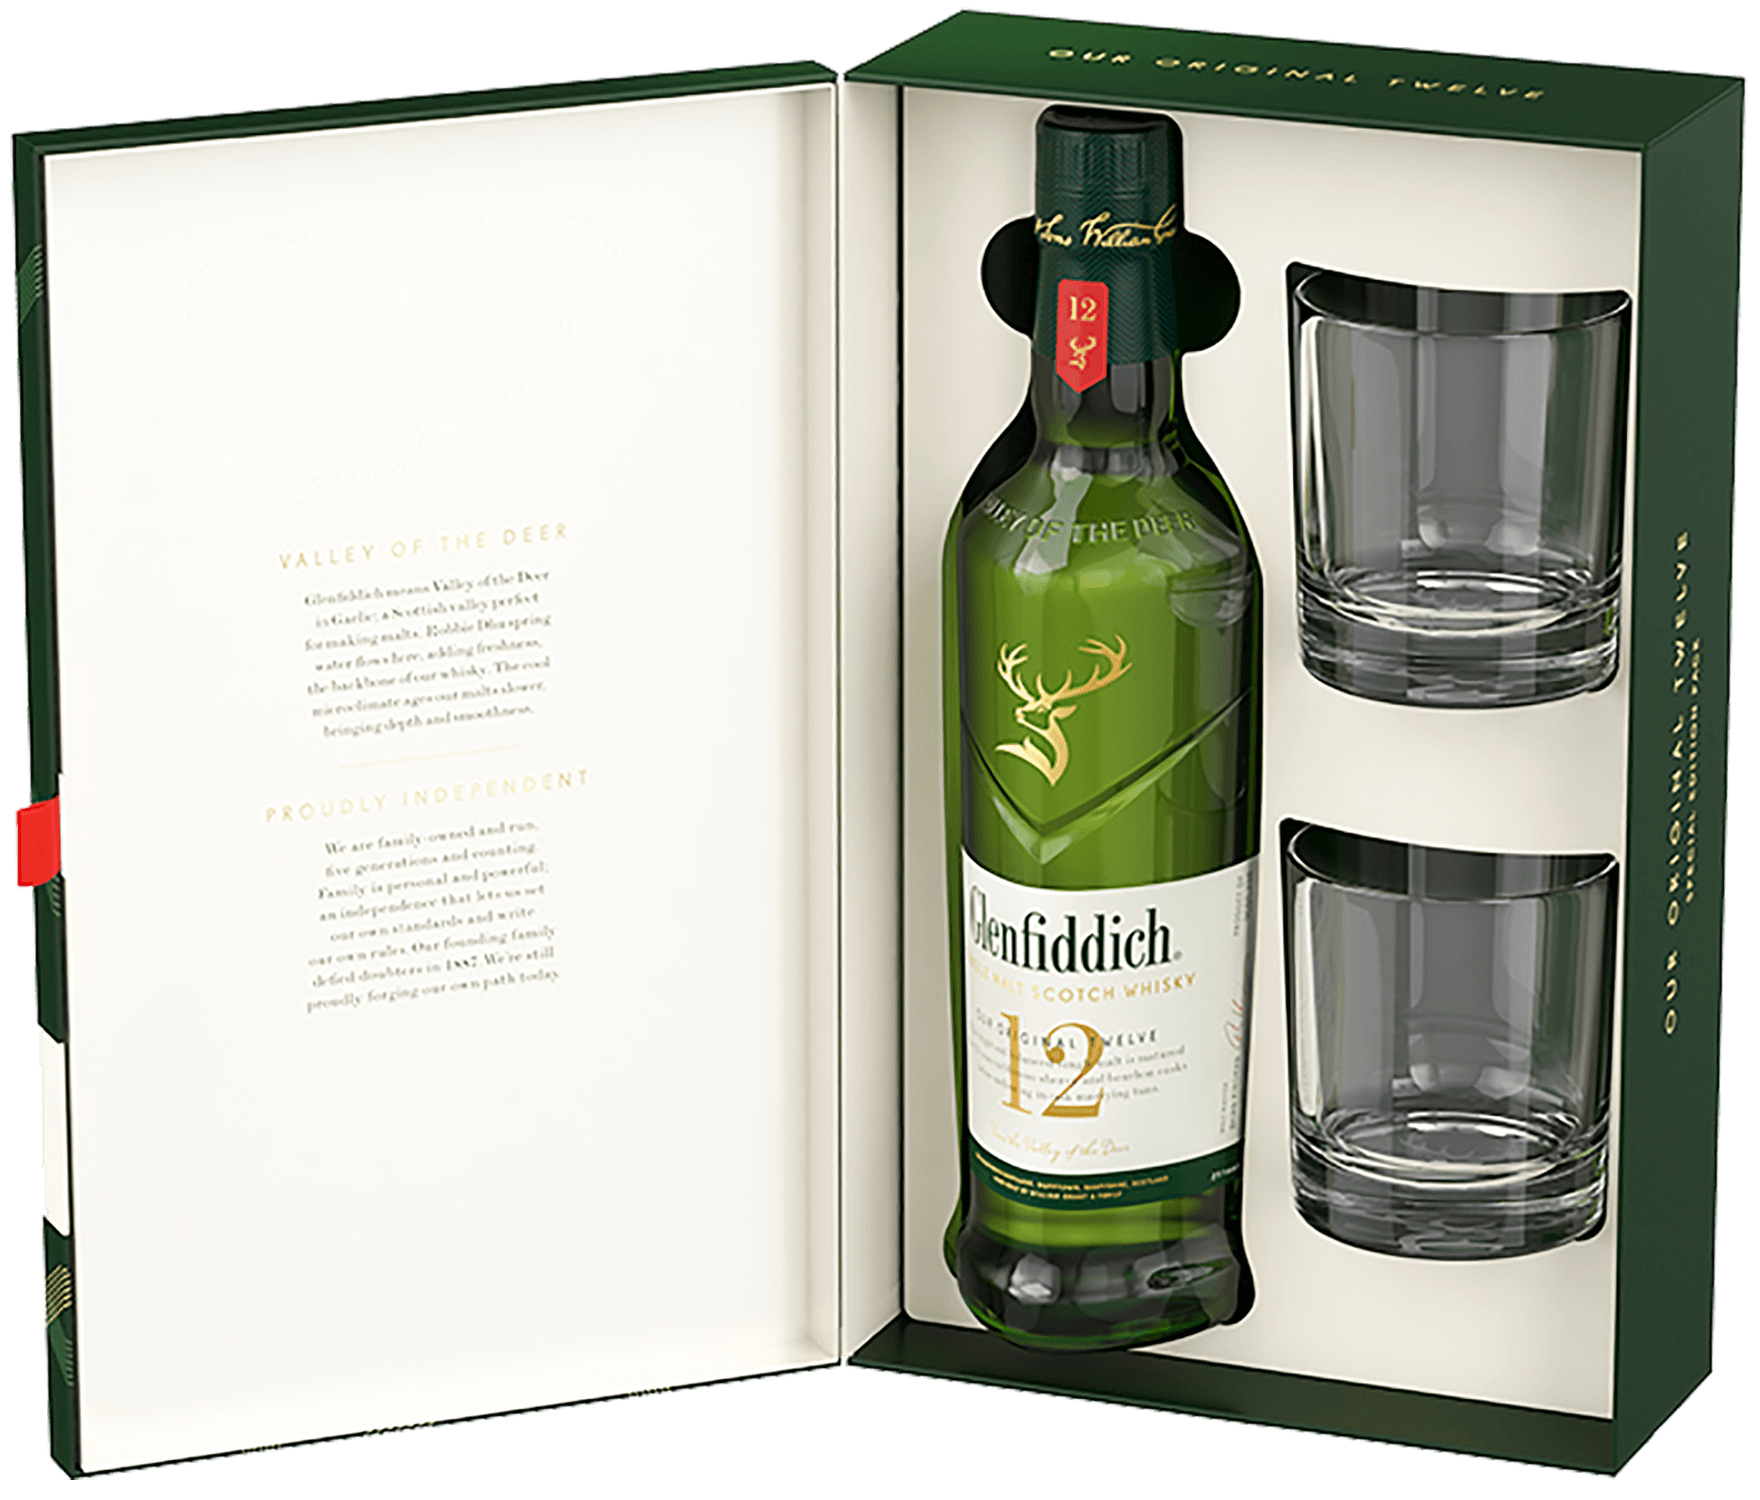 Glenfiddich Single Malt Scotch Whisky 12 y.o. (gift box with 2 glasses) glenfiddich single malt scotch whisky 21 yo gift box